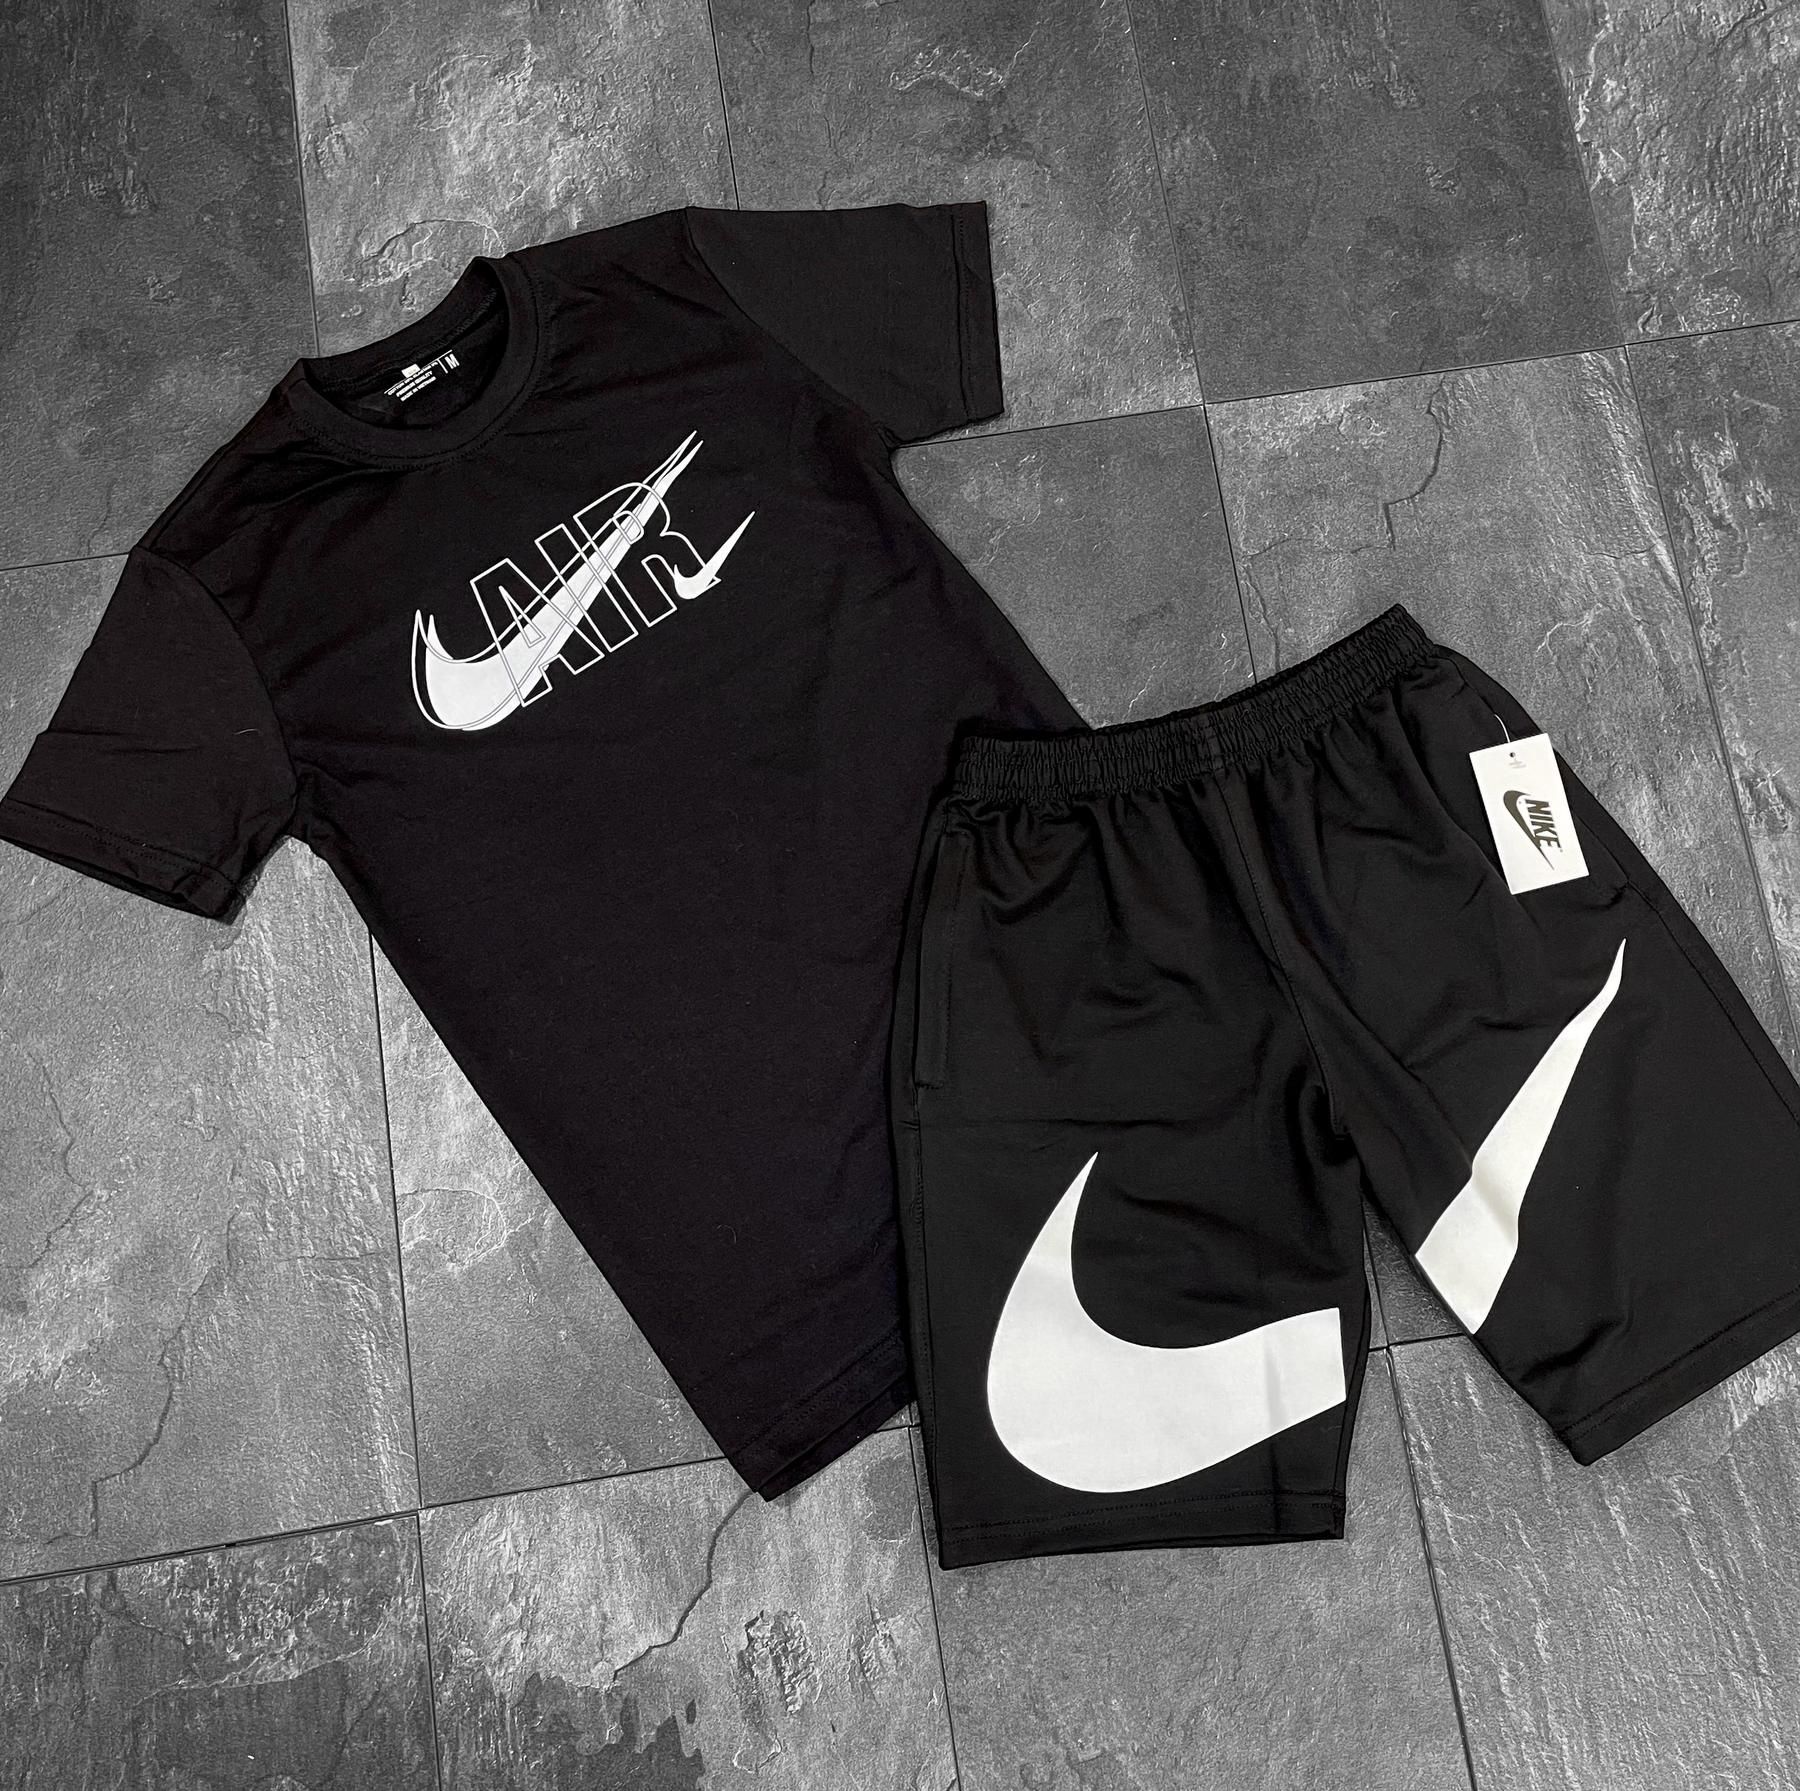 Чоловічі шорти Nike и футболка Найк